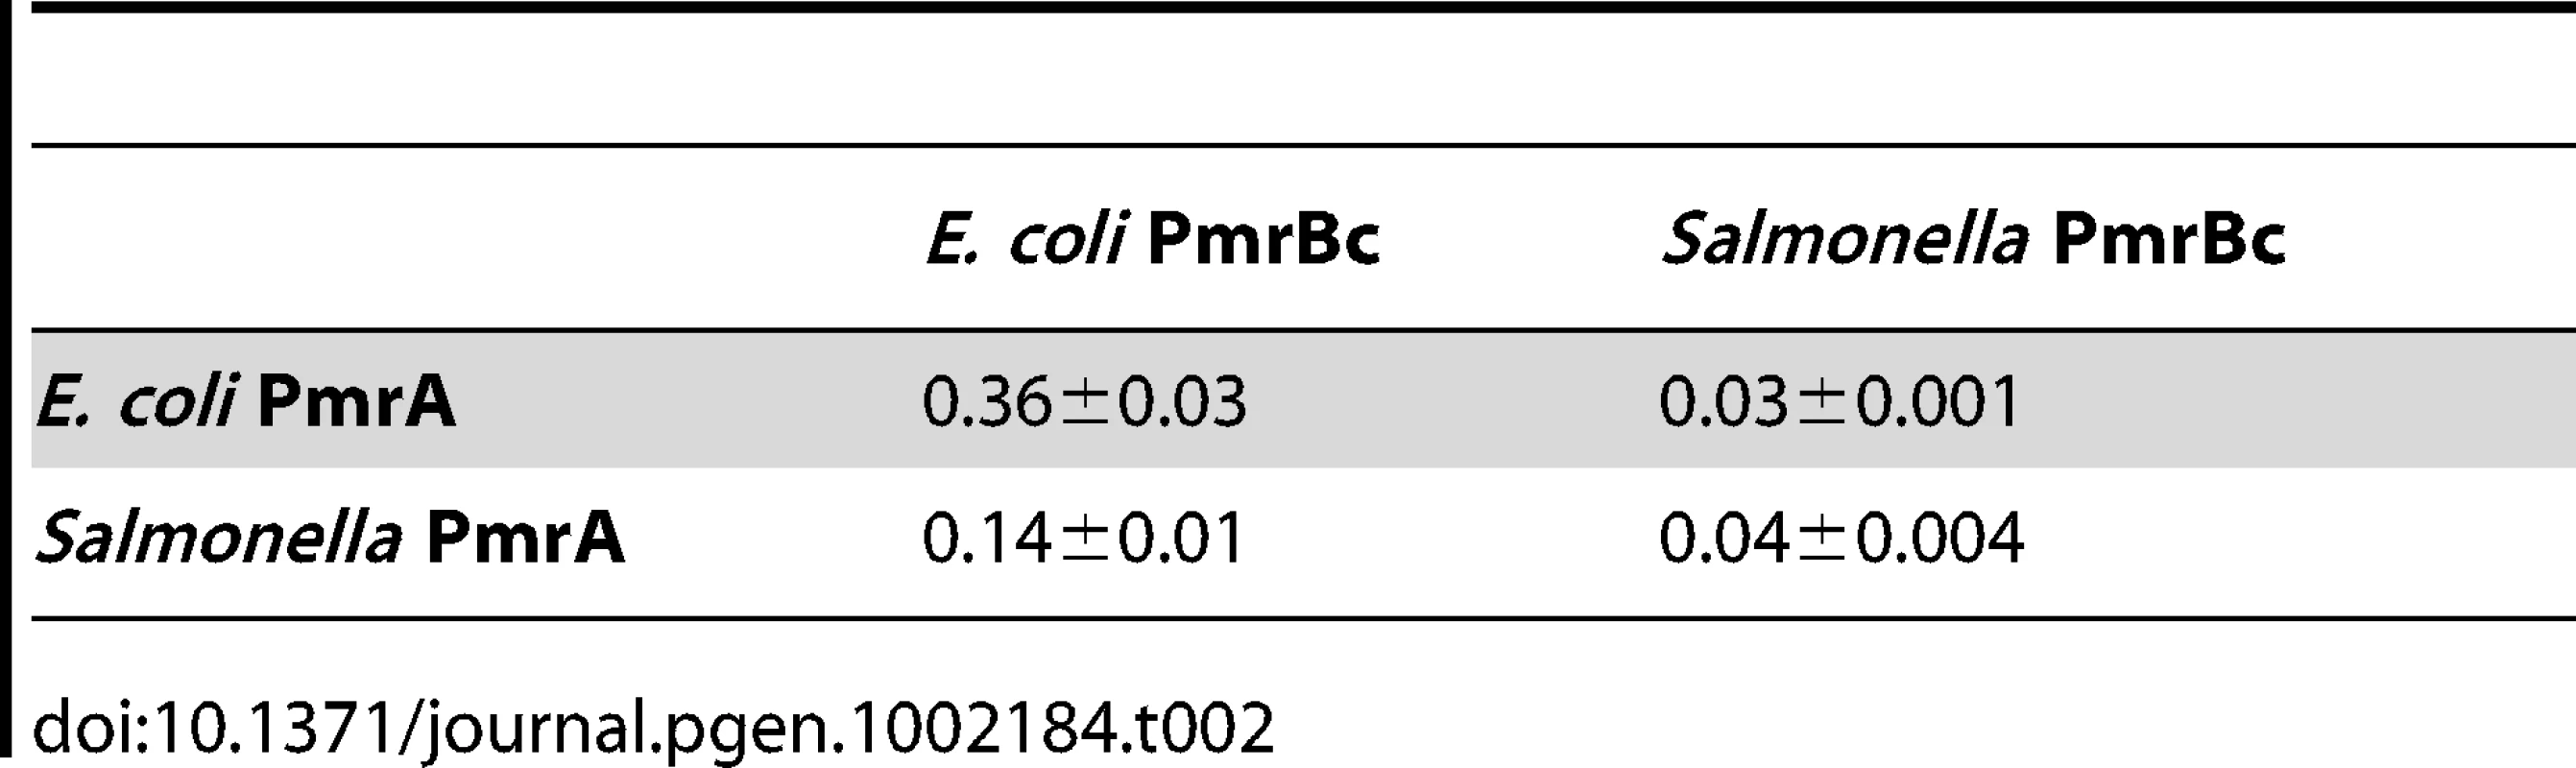 Rate constants for PmrB&lt;sub&gt;c&lt;/sub&gt;-mediated dephosphorylation of PmrA-P, &lt;i&gt;k&lt;sub&gt;observed&lt;/sub&gt;&lt;/i&gt; (min&lt;sup&gt;−1&lt;/sup&gt;).